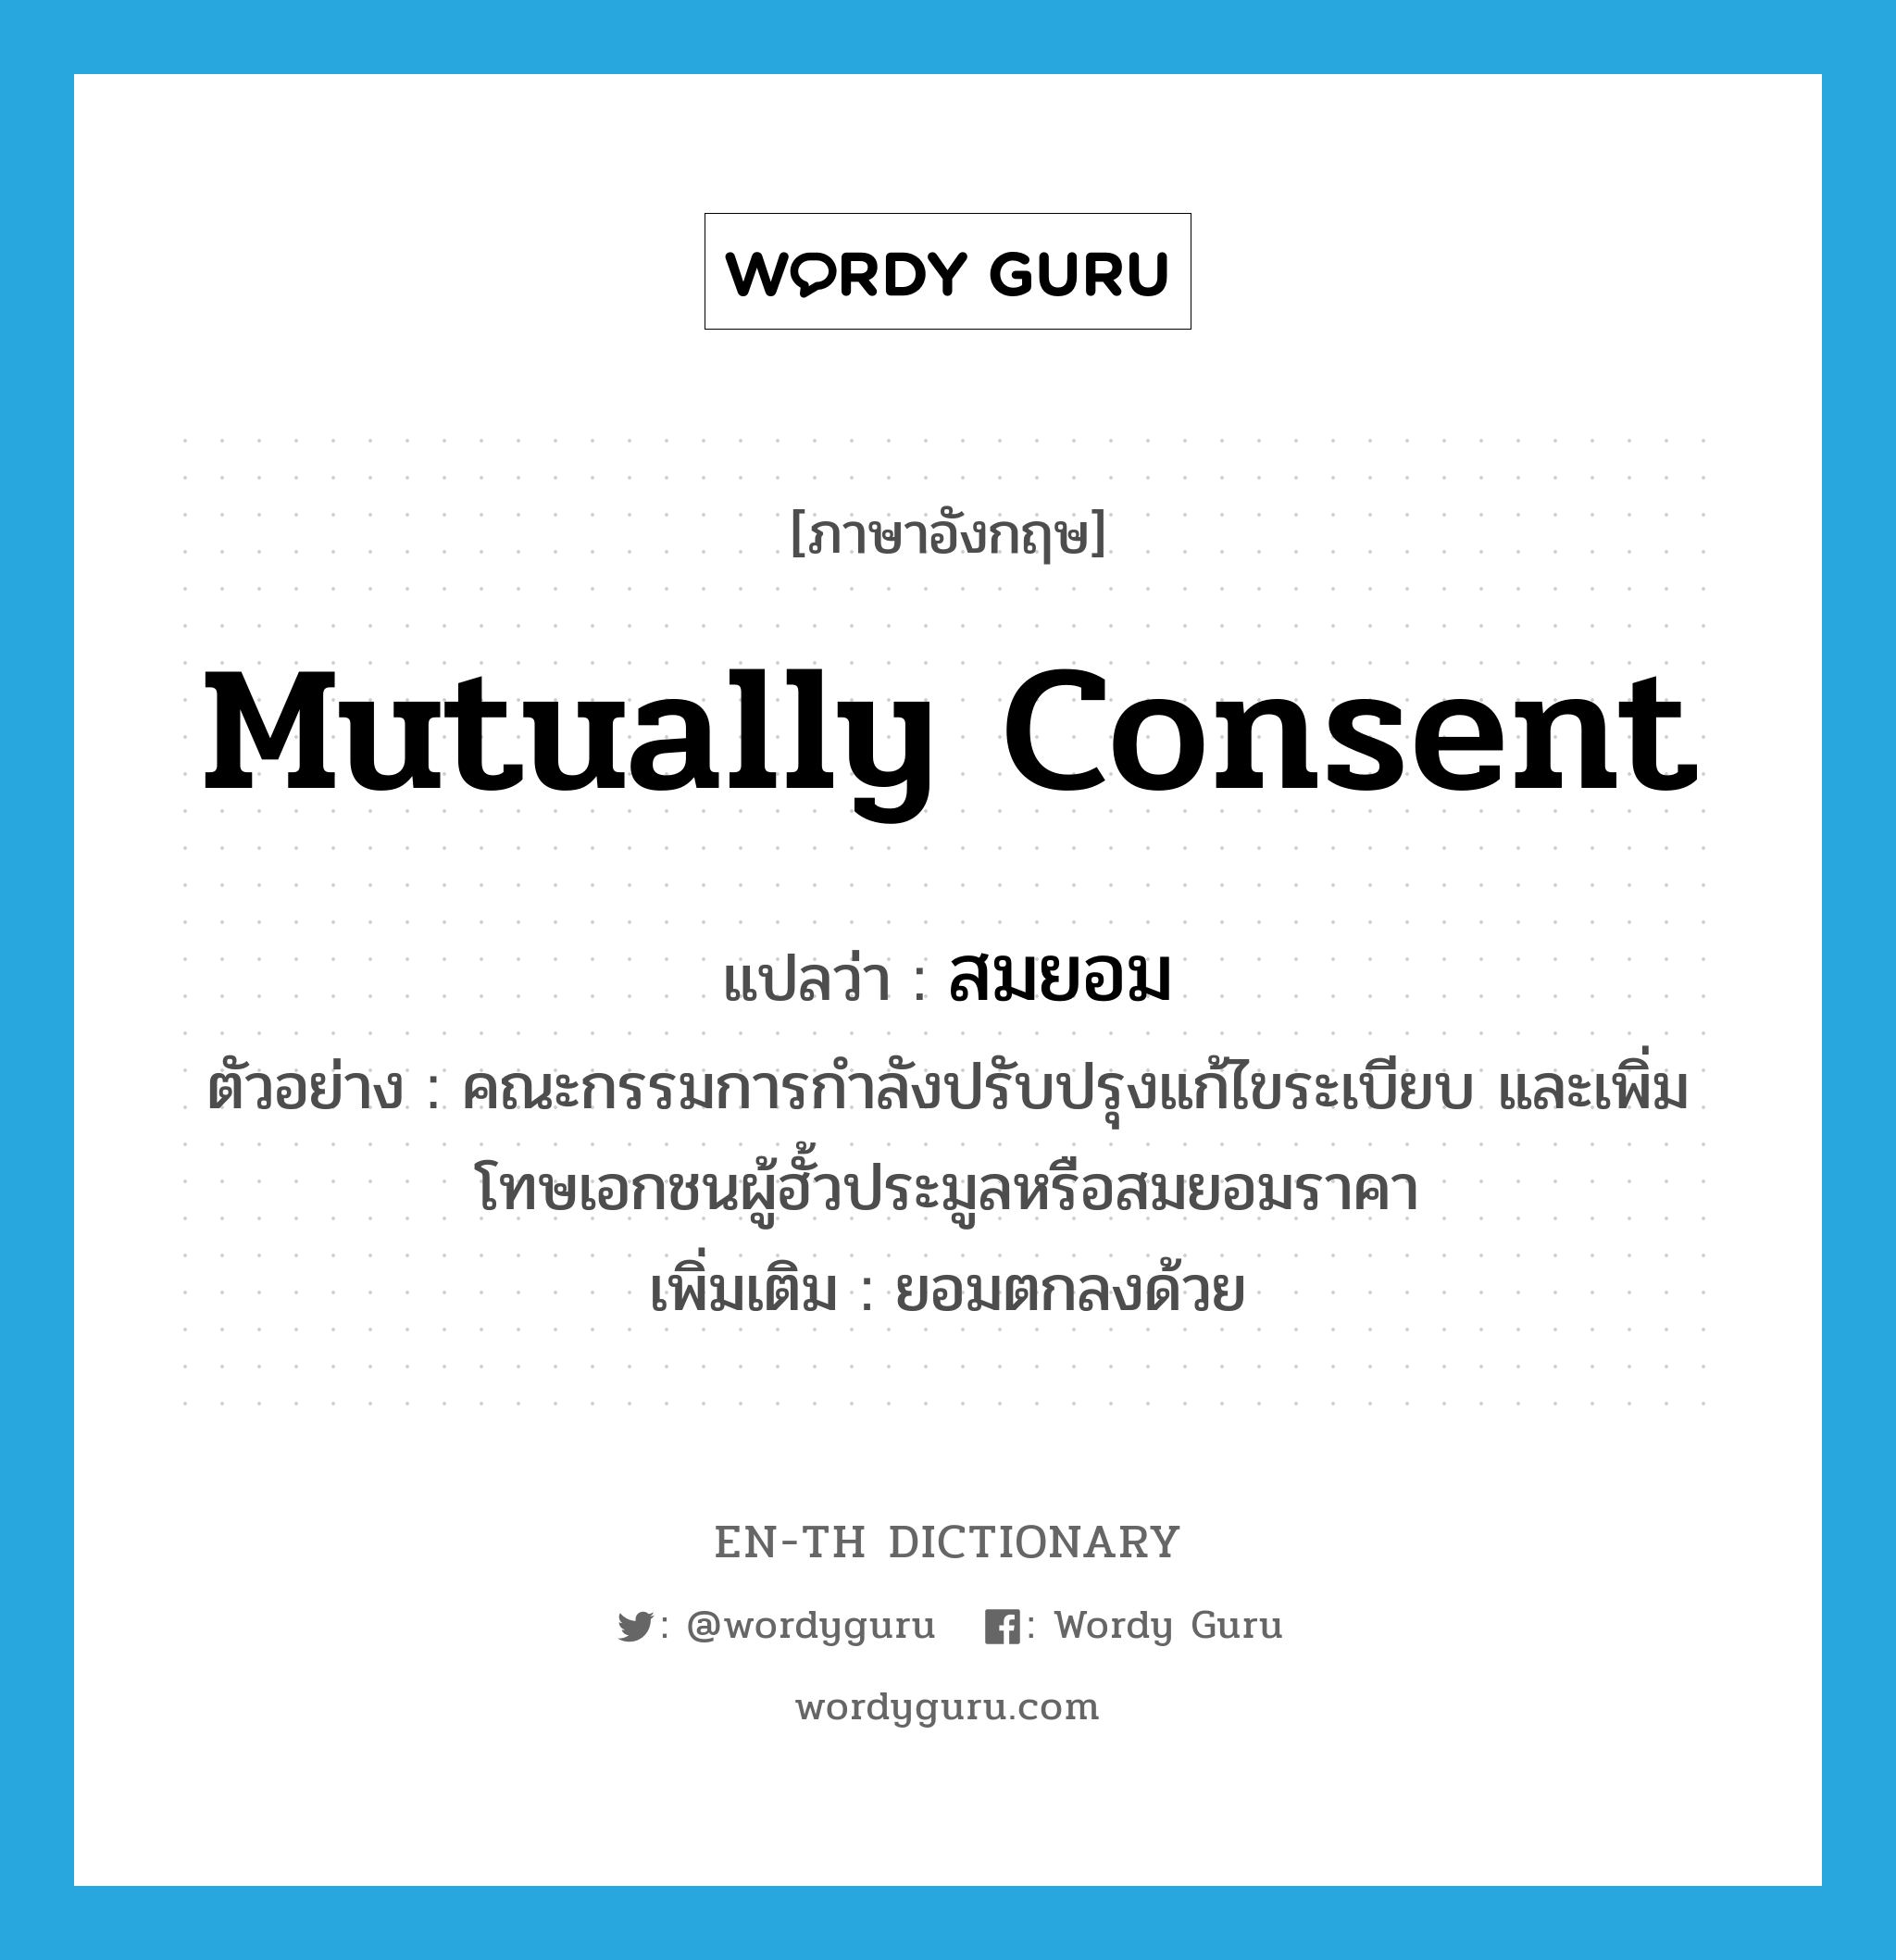 mutually consent แปลว่า?, คำศัพท์ภาษาอังกฤษ mutually consent แปลว่า สมยอม ประเภท V ตัวอย่าง คณะกรรมการกำลังปรับปรุงแก้ไขระเบียบ และเพิ่มโทษเอกชนผู้ฮั้วประมูลหรือสมยอมราคา เพิ่มเติม ยอมตกลงด้วย หมวด V